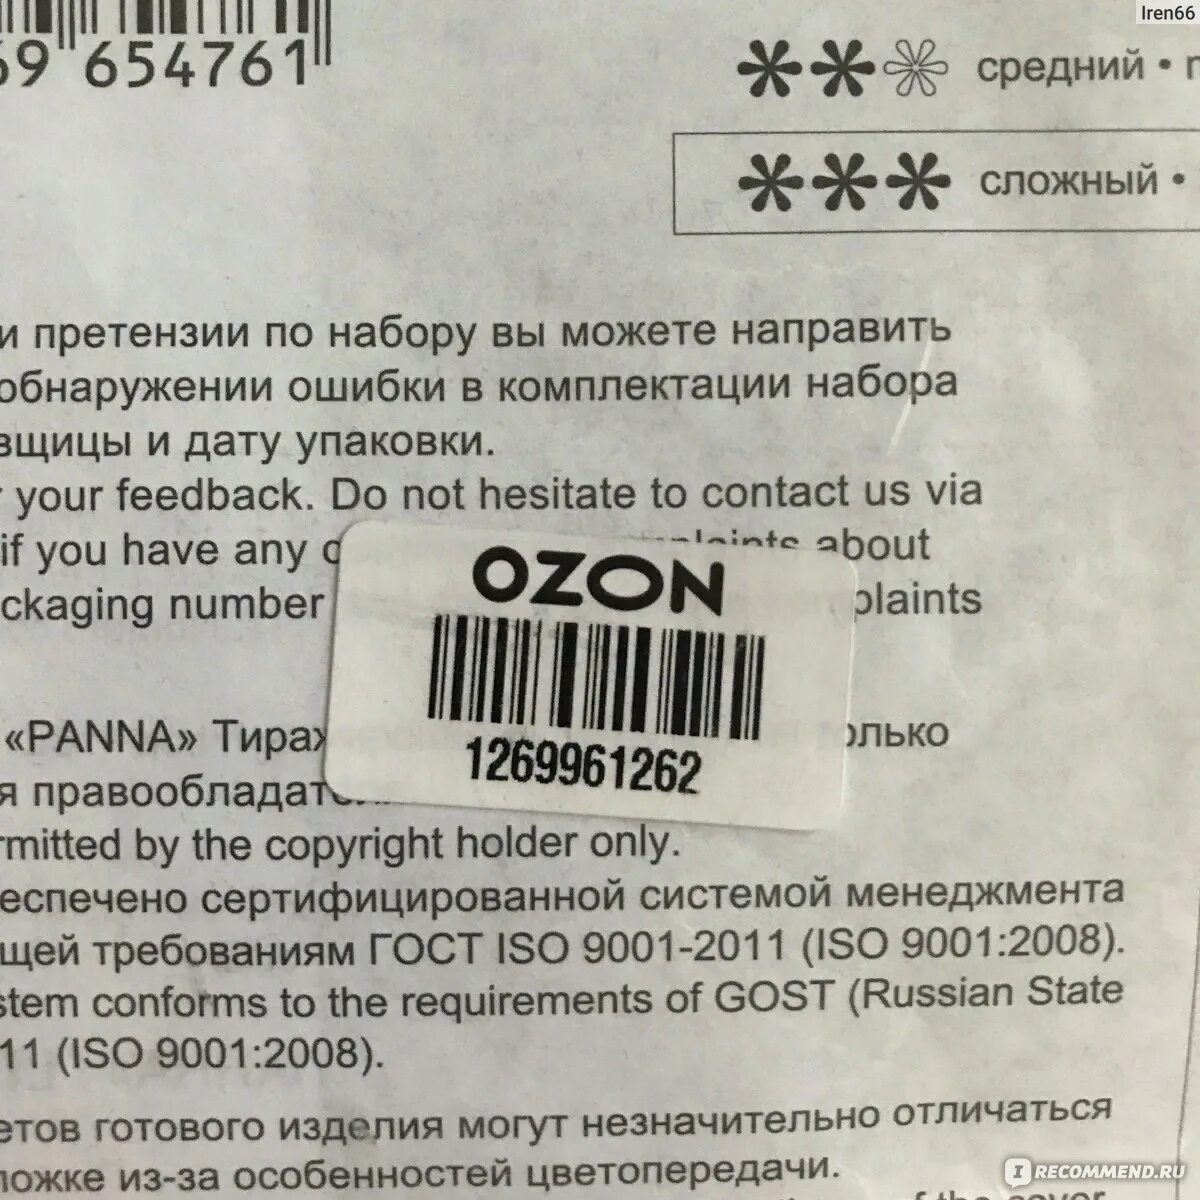 Озон как получить товар без штрих кода. Этикетка на товар для озона. Штрихкод Озон требования. OZON этикетка штрих код. Требования к этикетке Озон.